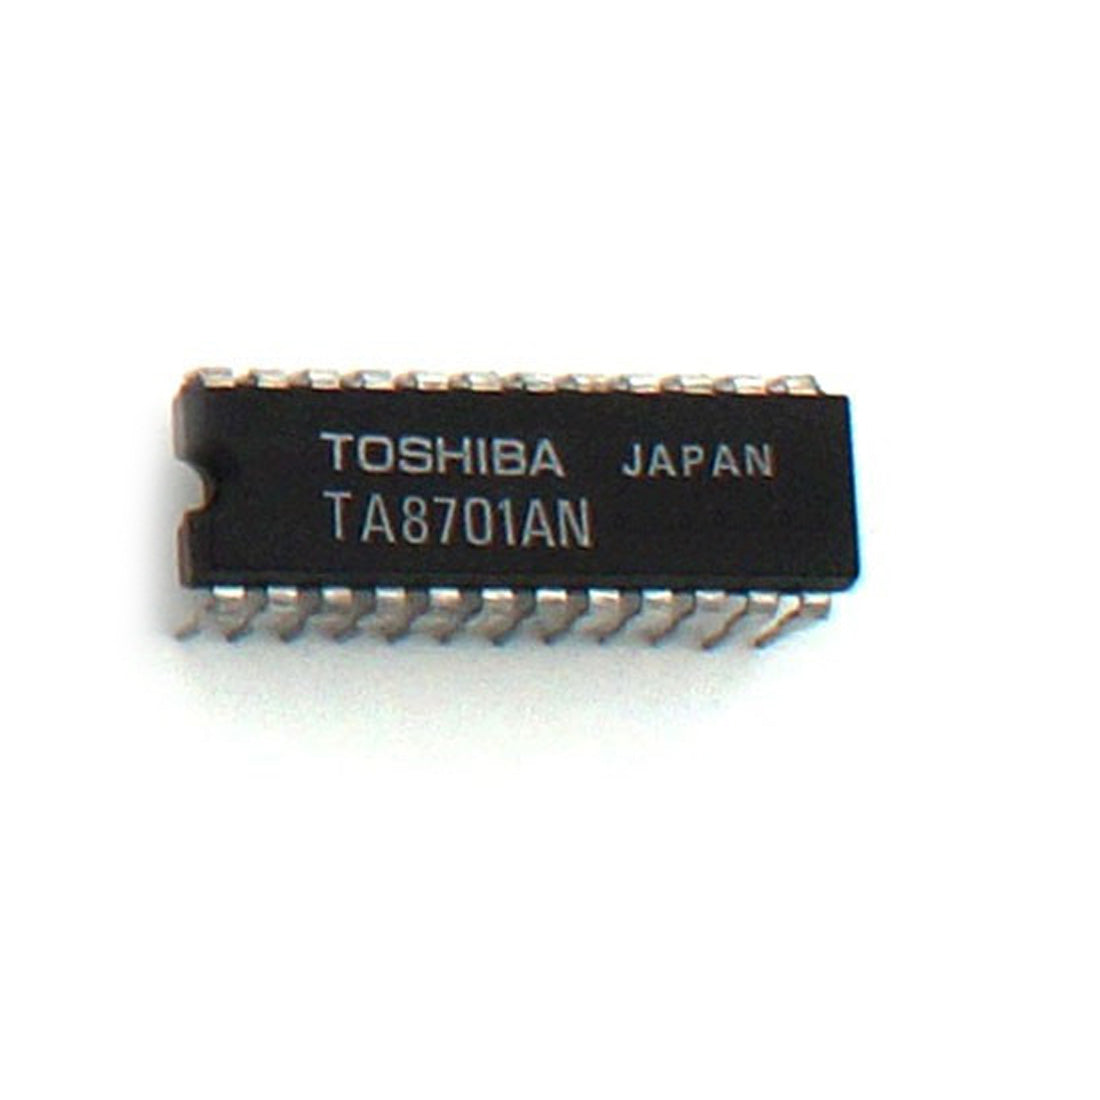 TOSHIBA TA8701AN componente elettronico, circuito integrato, 24 contatti